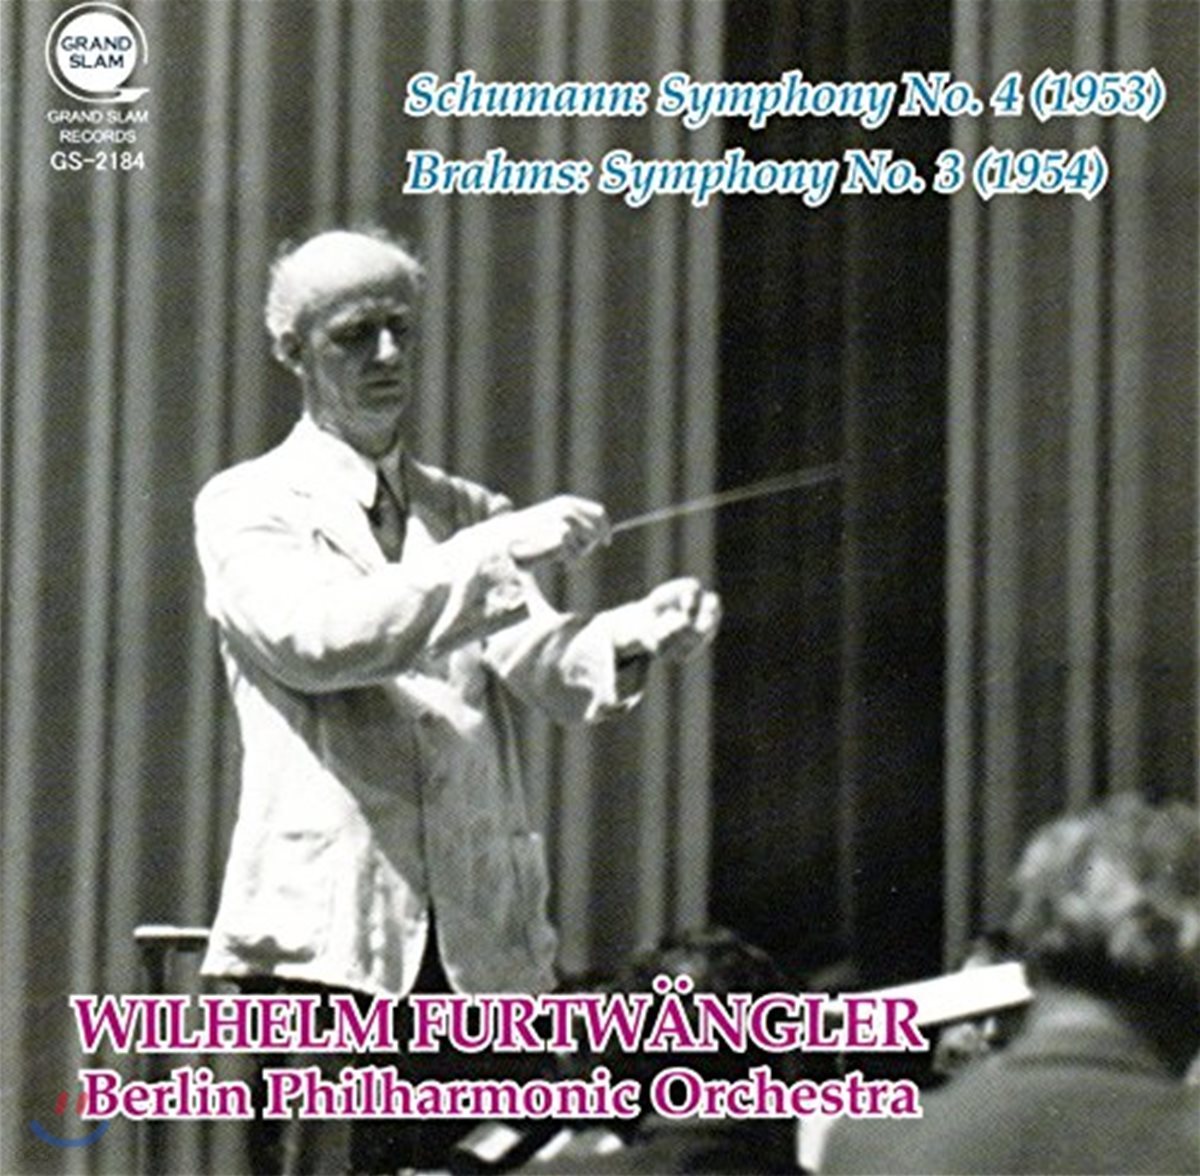 Wilhelm Furtwangler 슈만: 교향곡 4번 / 브람스: 교향곡 3번 (Shumann: Symphony No. 4 / Brahms: Symphony No. 3) 빌헬름 푸르트뱅글러, 베를린 필하모닉 오케스트라